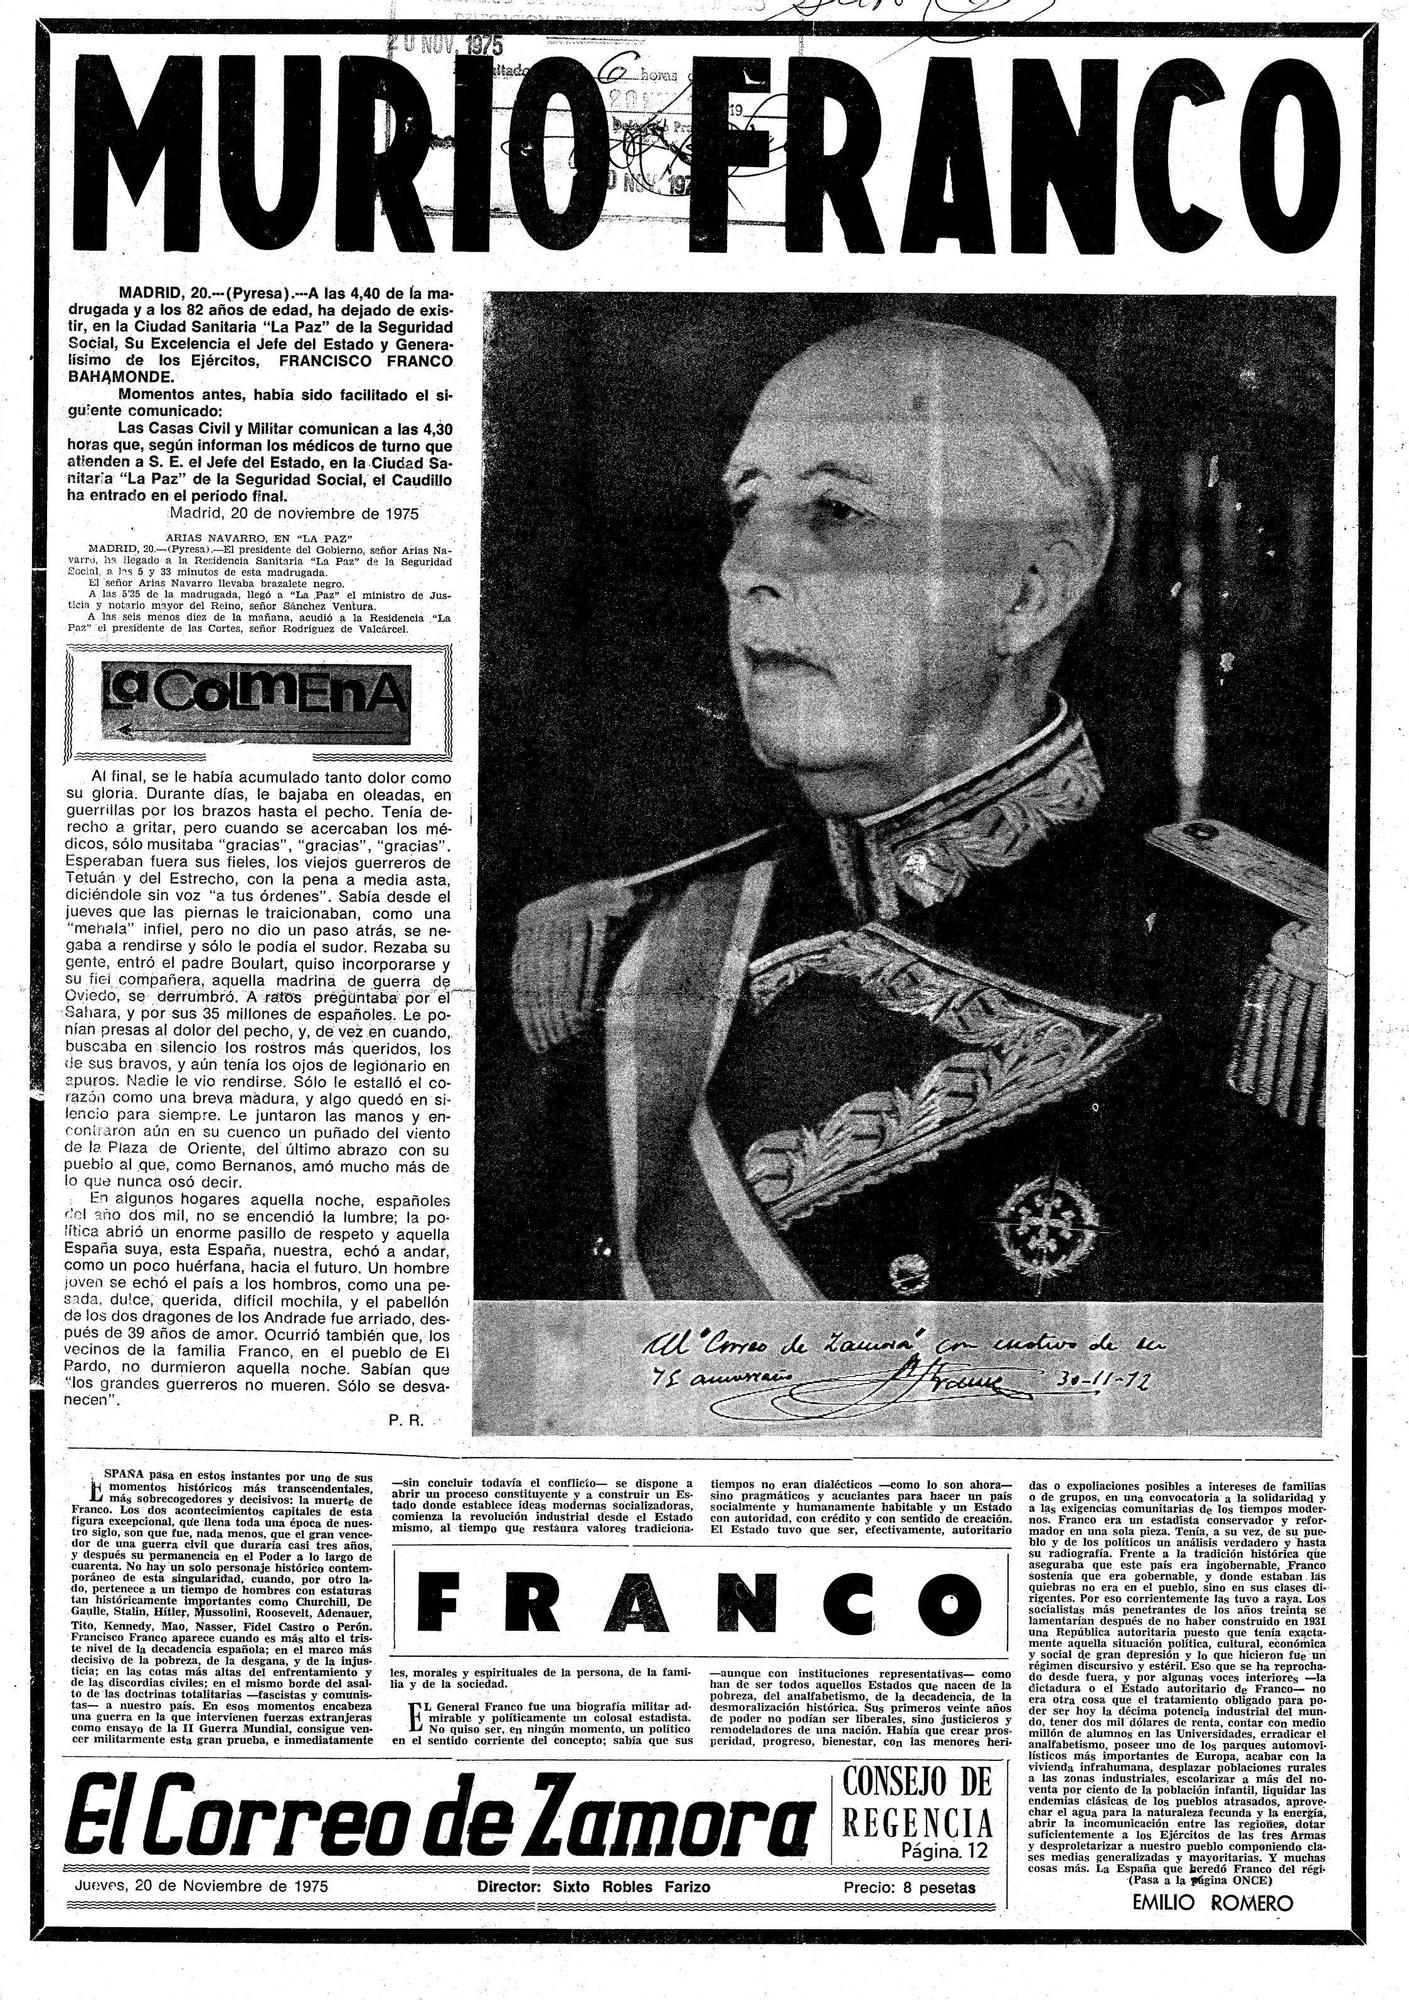 El Correo de Zamora, 20 de noviembre de 1975. Muerte de Franco